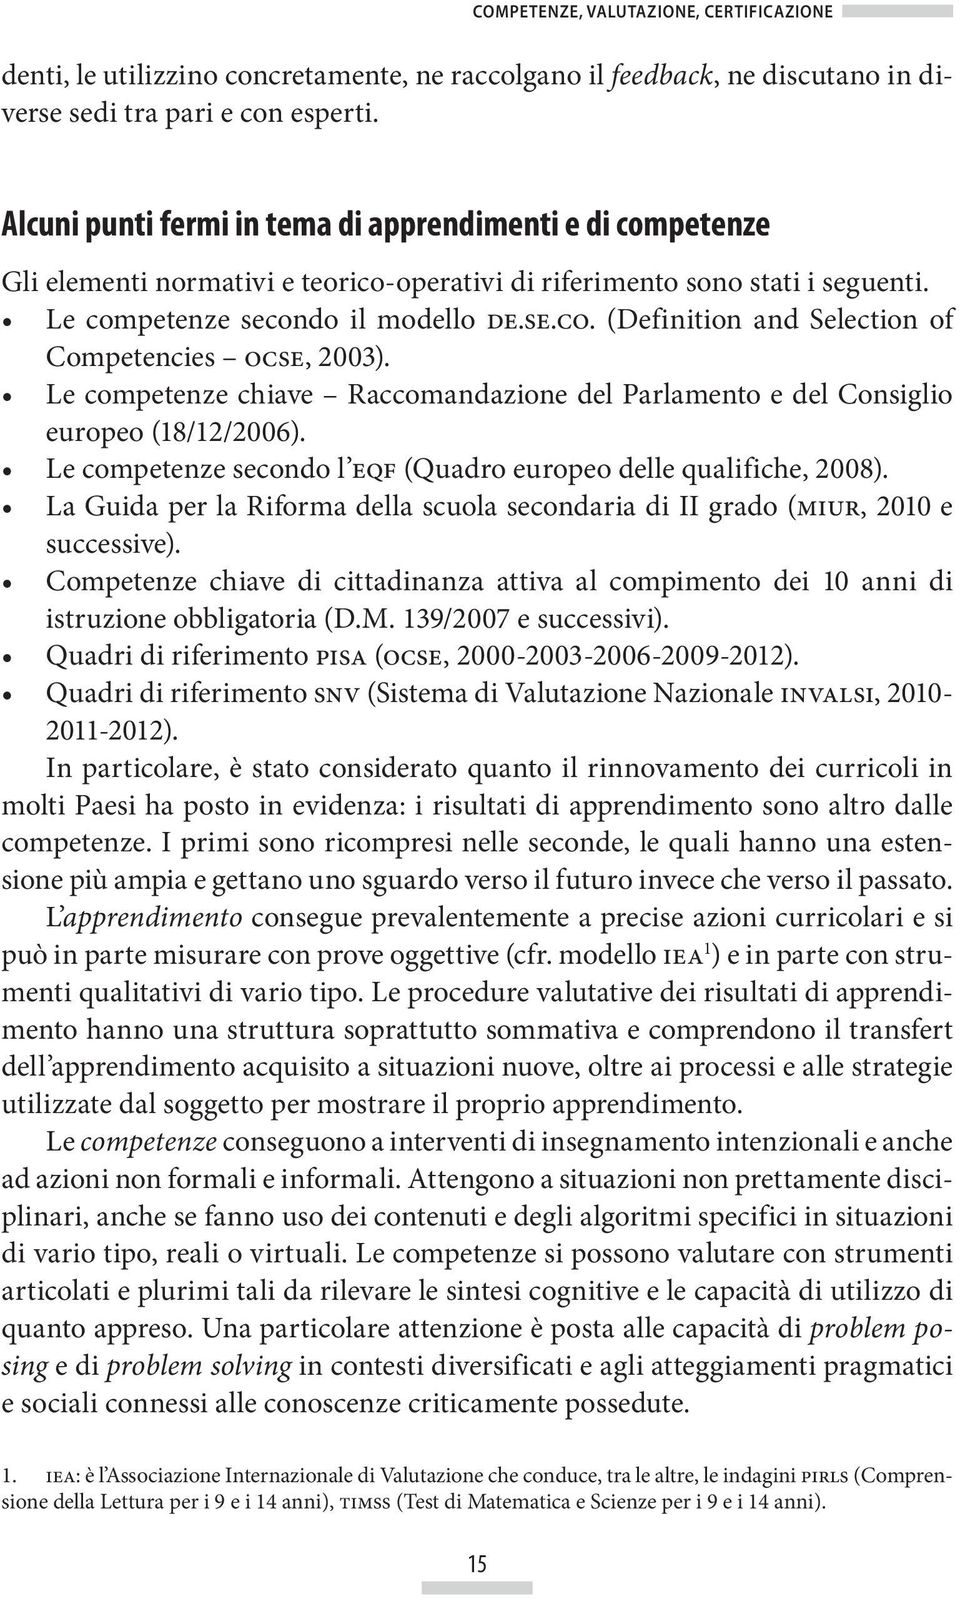 Le competenze chiave Raccomandazione del Parlamento e del Consiglio europeo (18/12/2006). Le competenze secondo l eqf (Quadro europeo delle qualifiche, 2008).